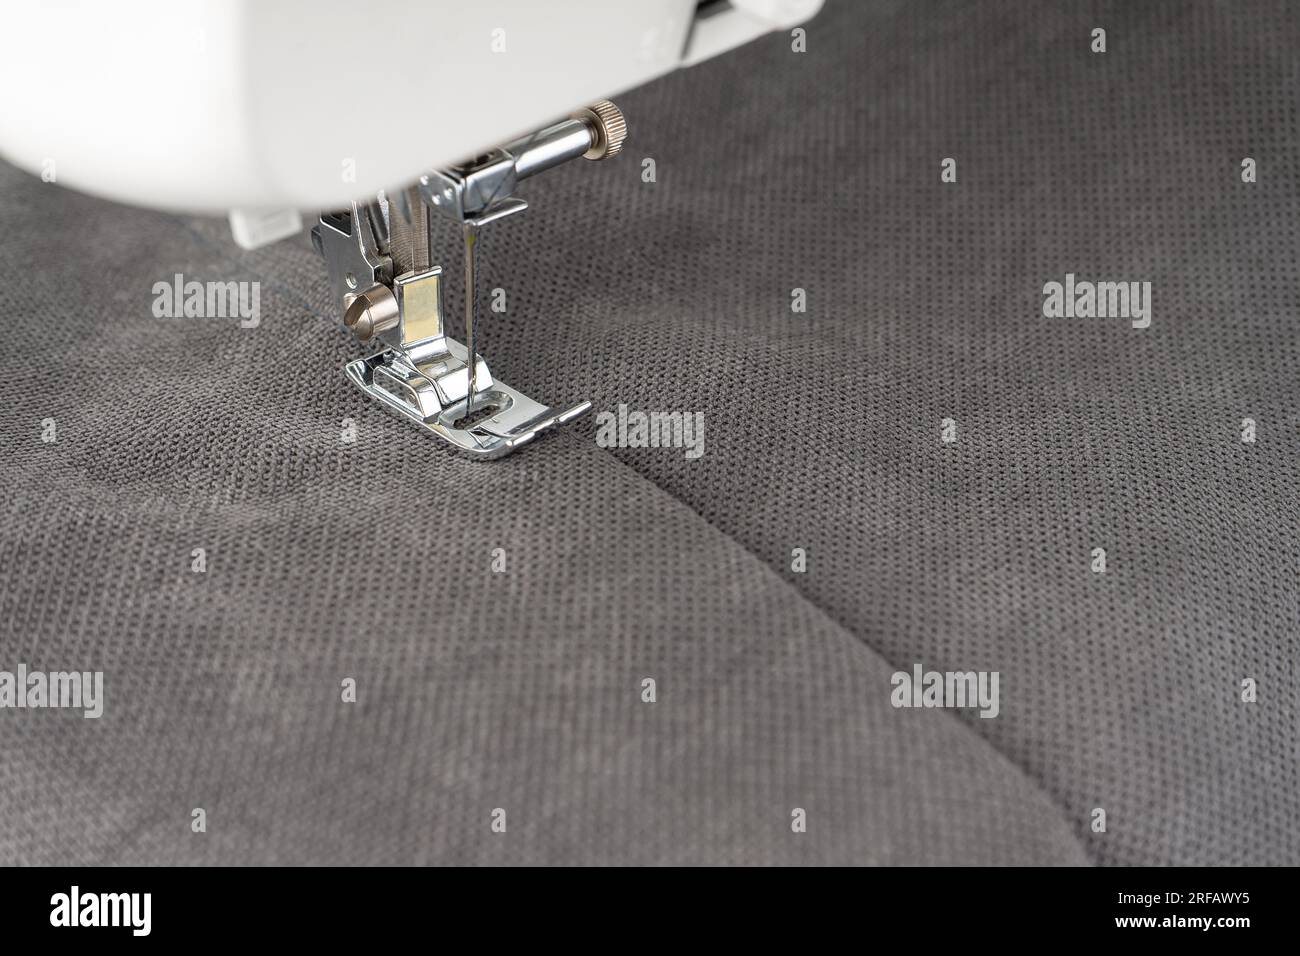 Máquina de coser moderna con tela gris y. Proceso de costura ropa, cortinas, tapicería. Negocio, hobby, hecho a mano, cero residuos, reciclaje, reparar con Foto de stock